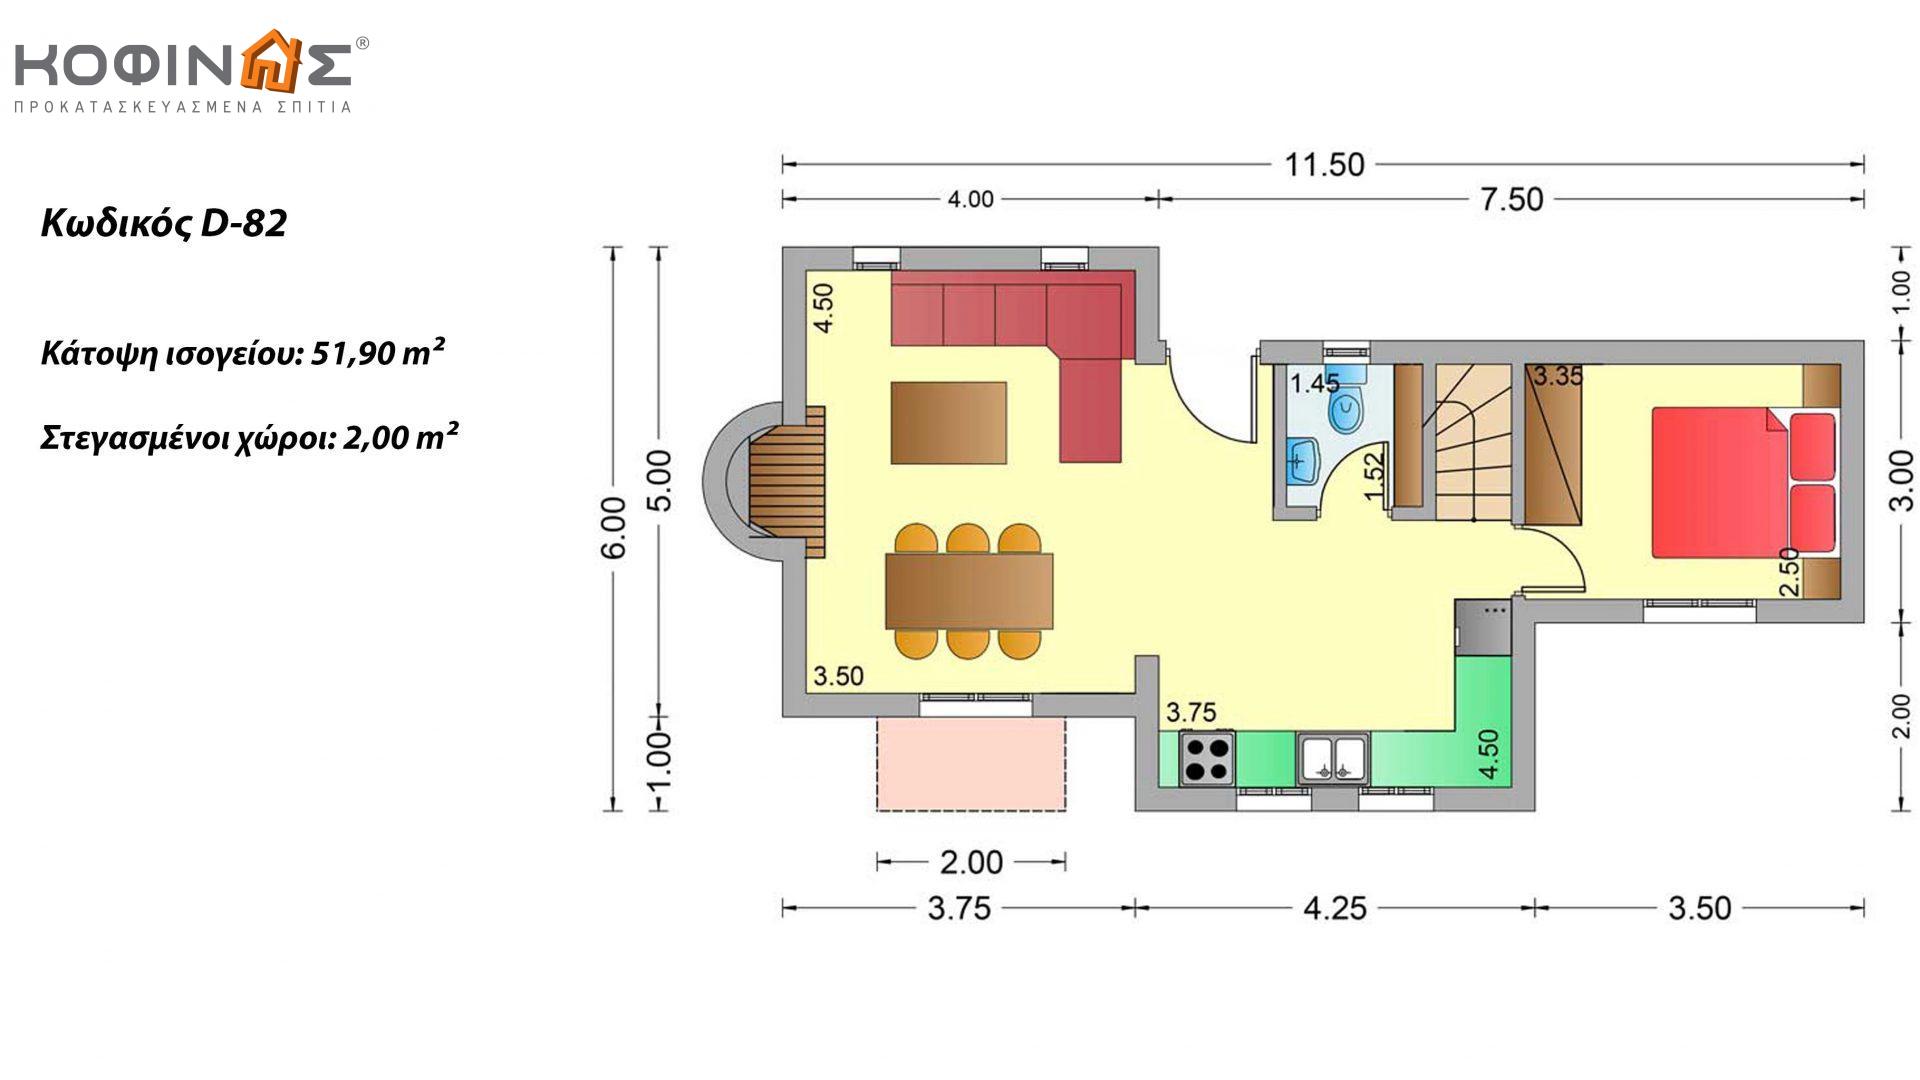 Διώροφη Κατοικία D-82, συνολικής επιφάνειας 82,30 τ.μ., συνολική επιφάνεια στεγασμένων χώρων 2,00 τ.μ., μπαλκόνια 22,70 τ.μ.